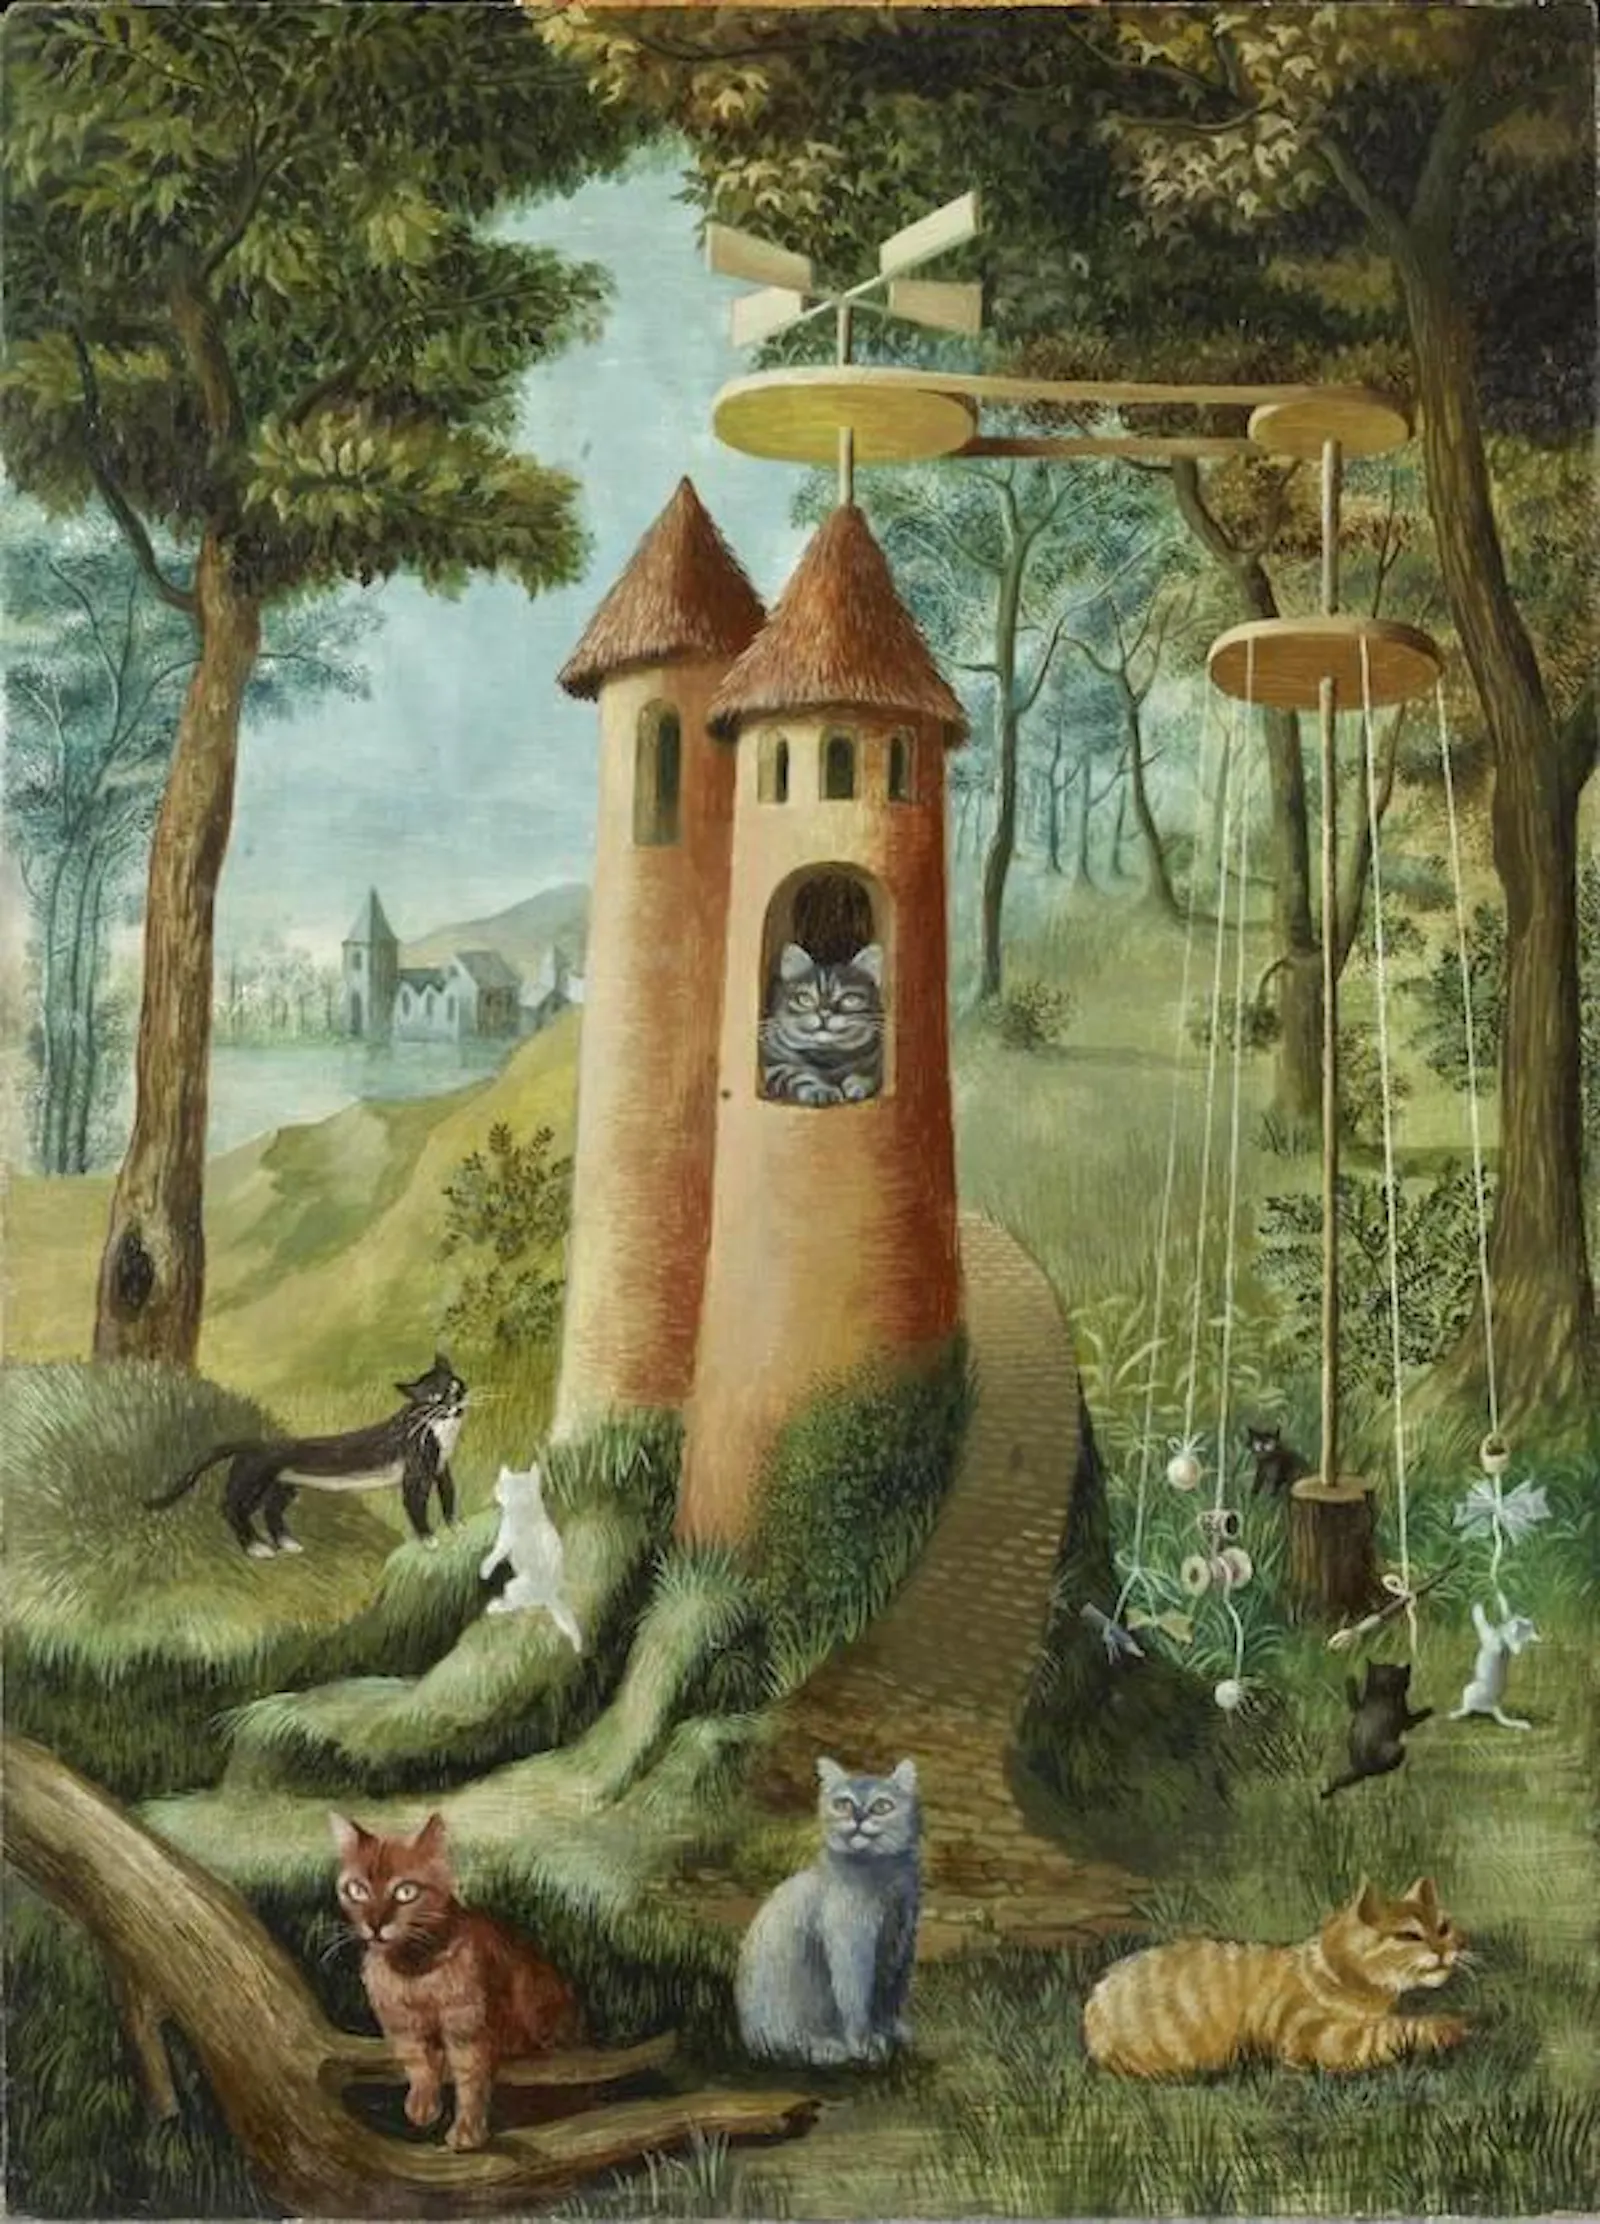 Un gato asoma por la ventana de una torre mientras en el paisaje juegan una decena de gatos diferentes.